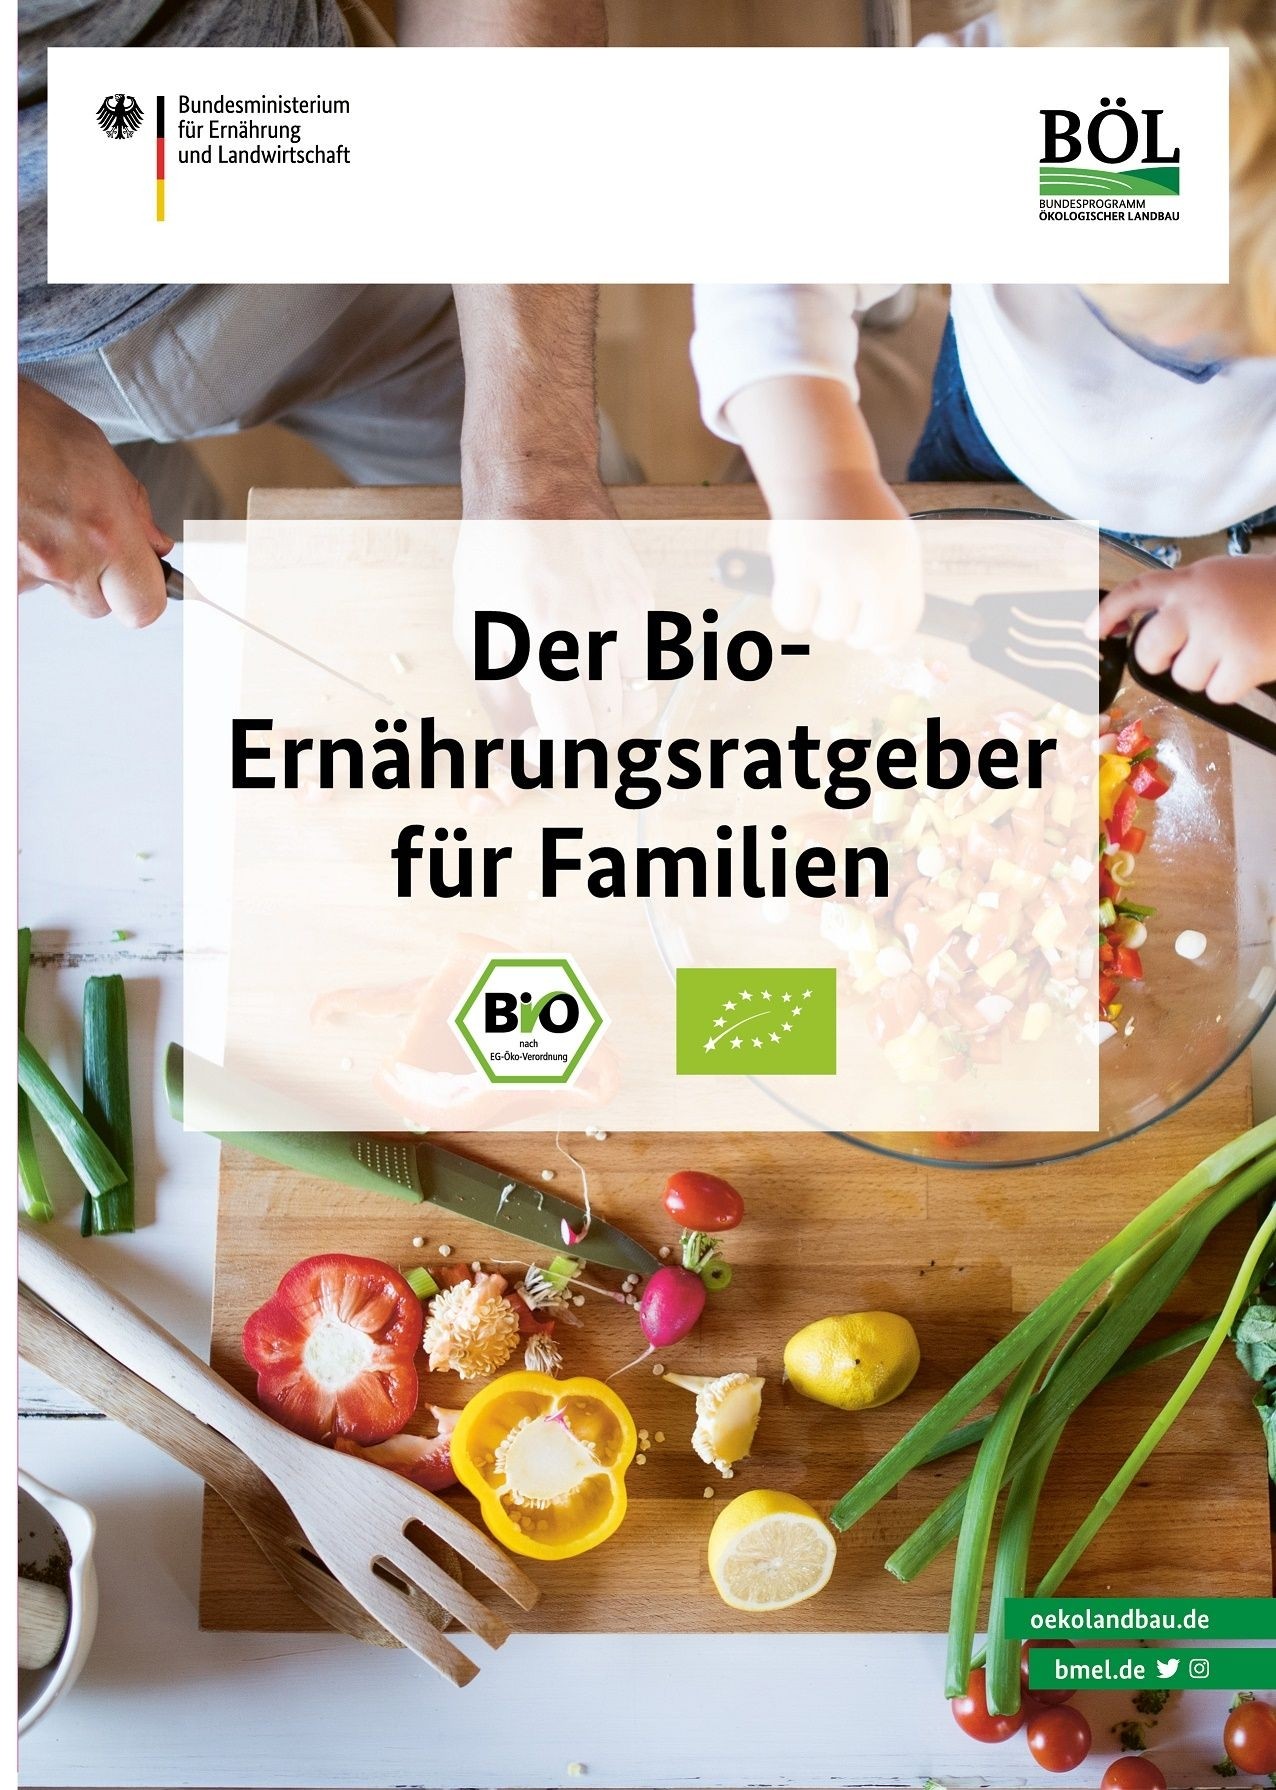 Der Bio-Ernährungsratgeber für Familien